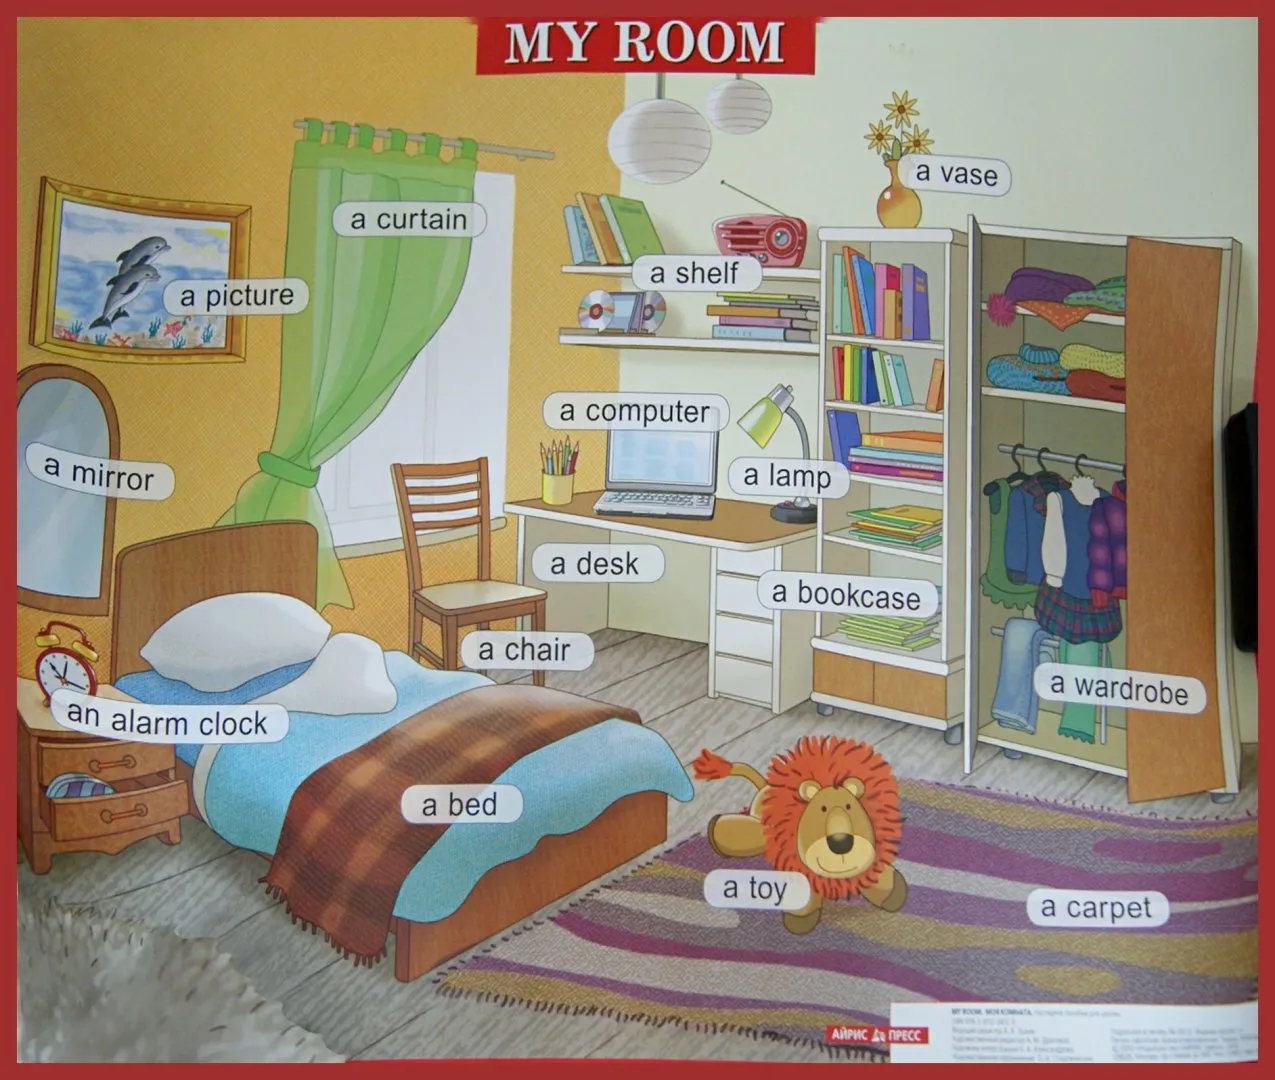 My room слова. Картинка комнаты для описания. Комнаты на английском языке. Описание комнаты. Картинки комнаты для описания на английском языке.